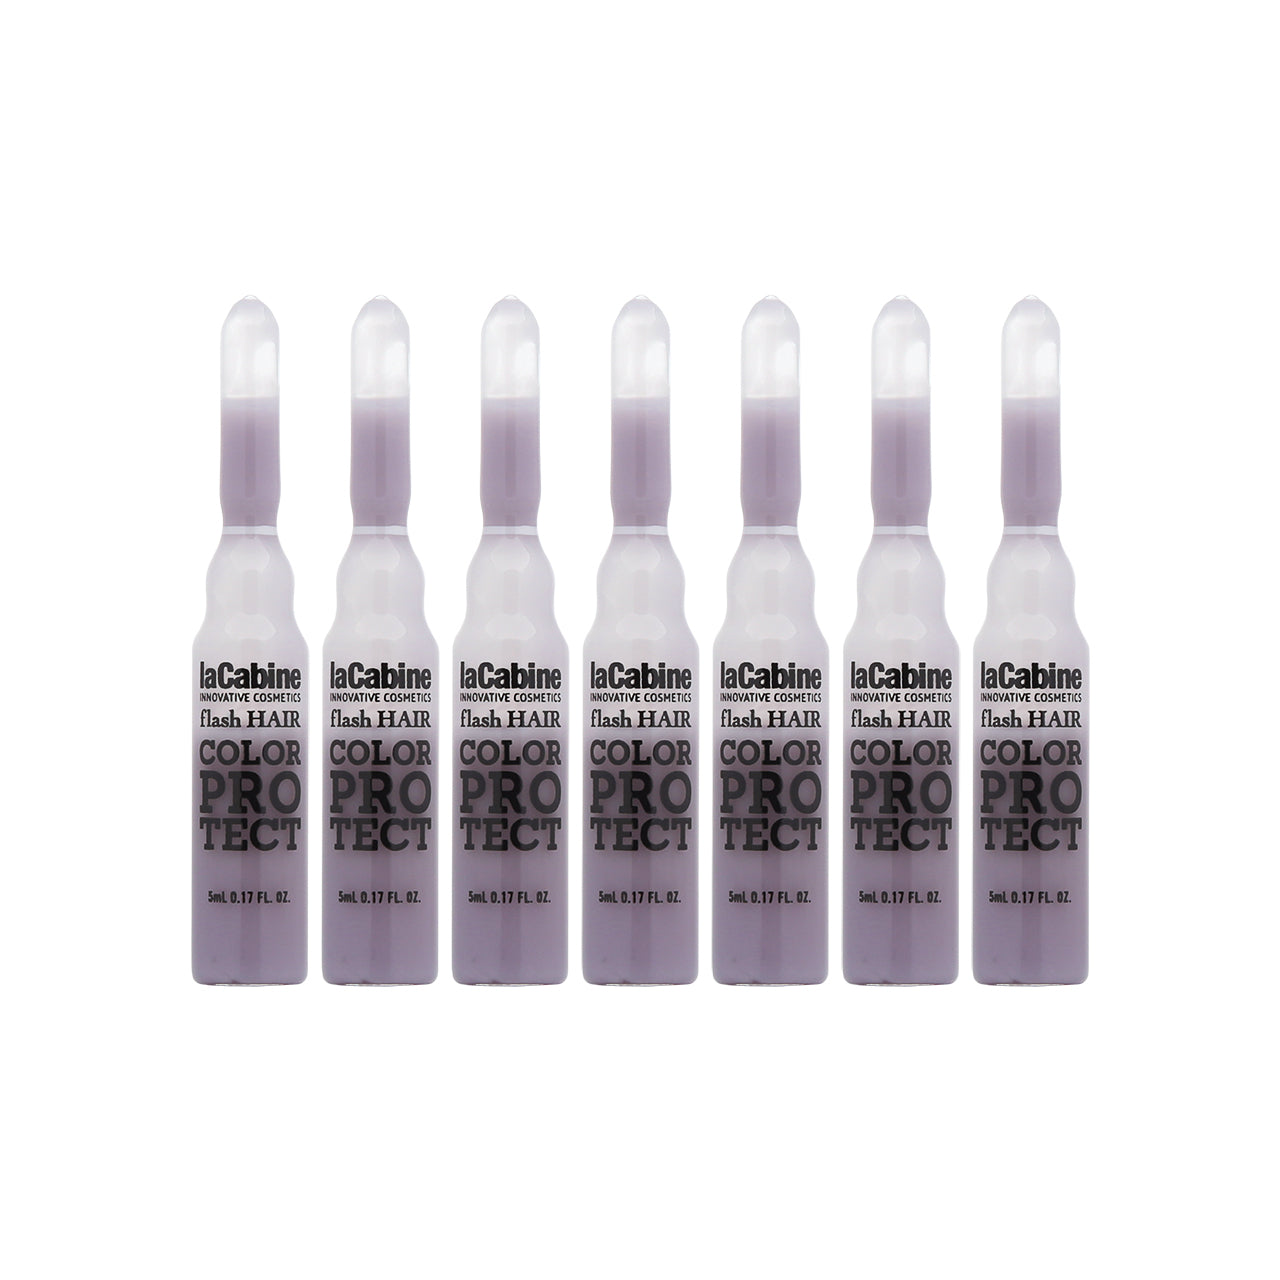 La Cabine Color Protect Hair Ampoules 5ml x 7pcs | Sasa Global eShop